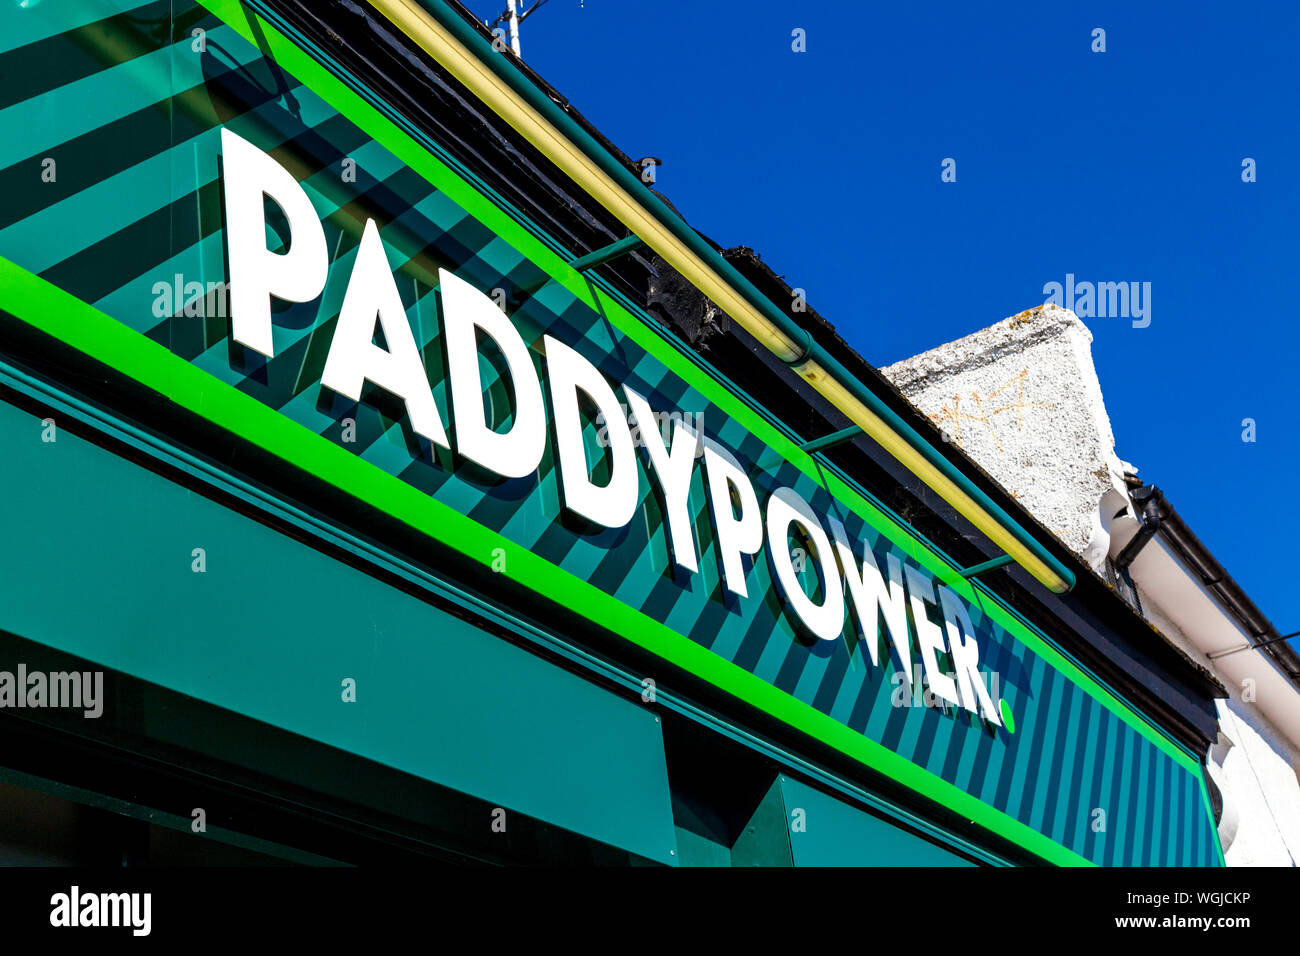 Paddy Power betting shop (Abbey Wood, UK) Stock Photo